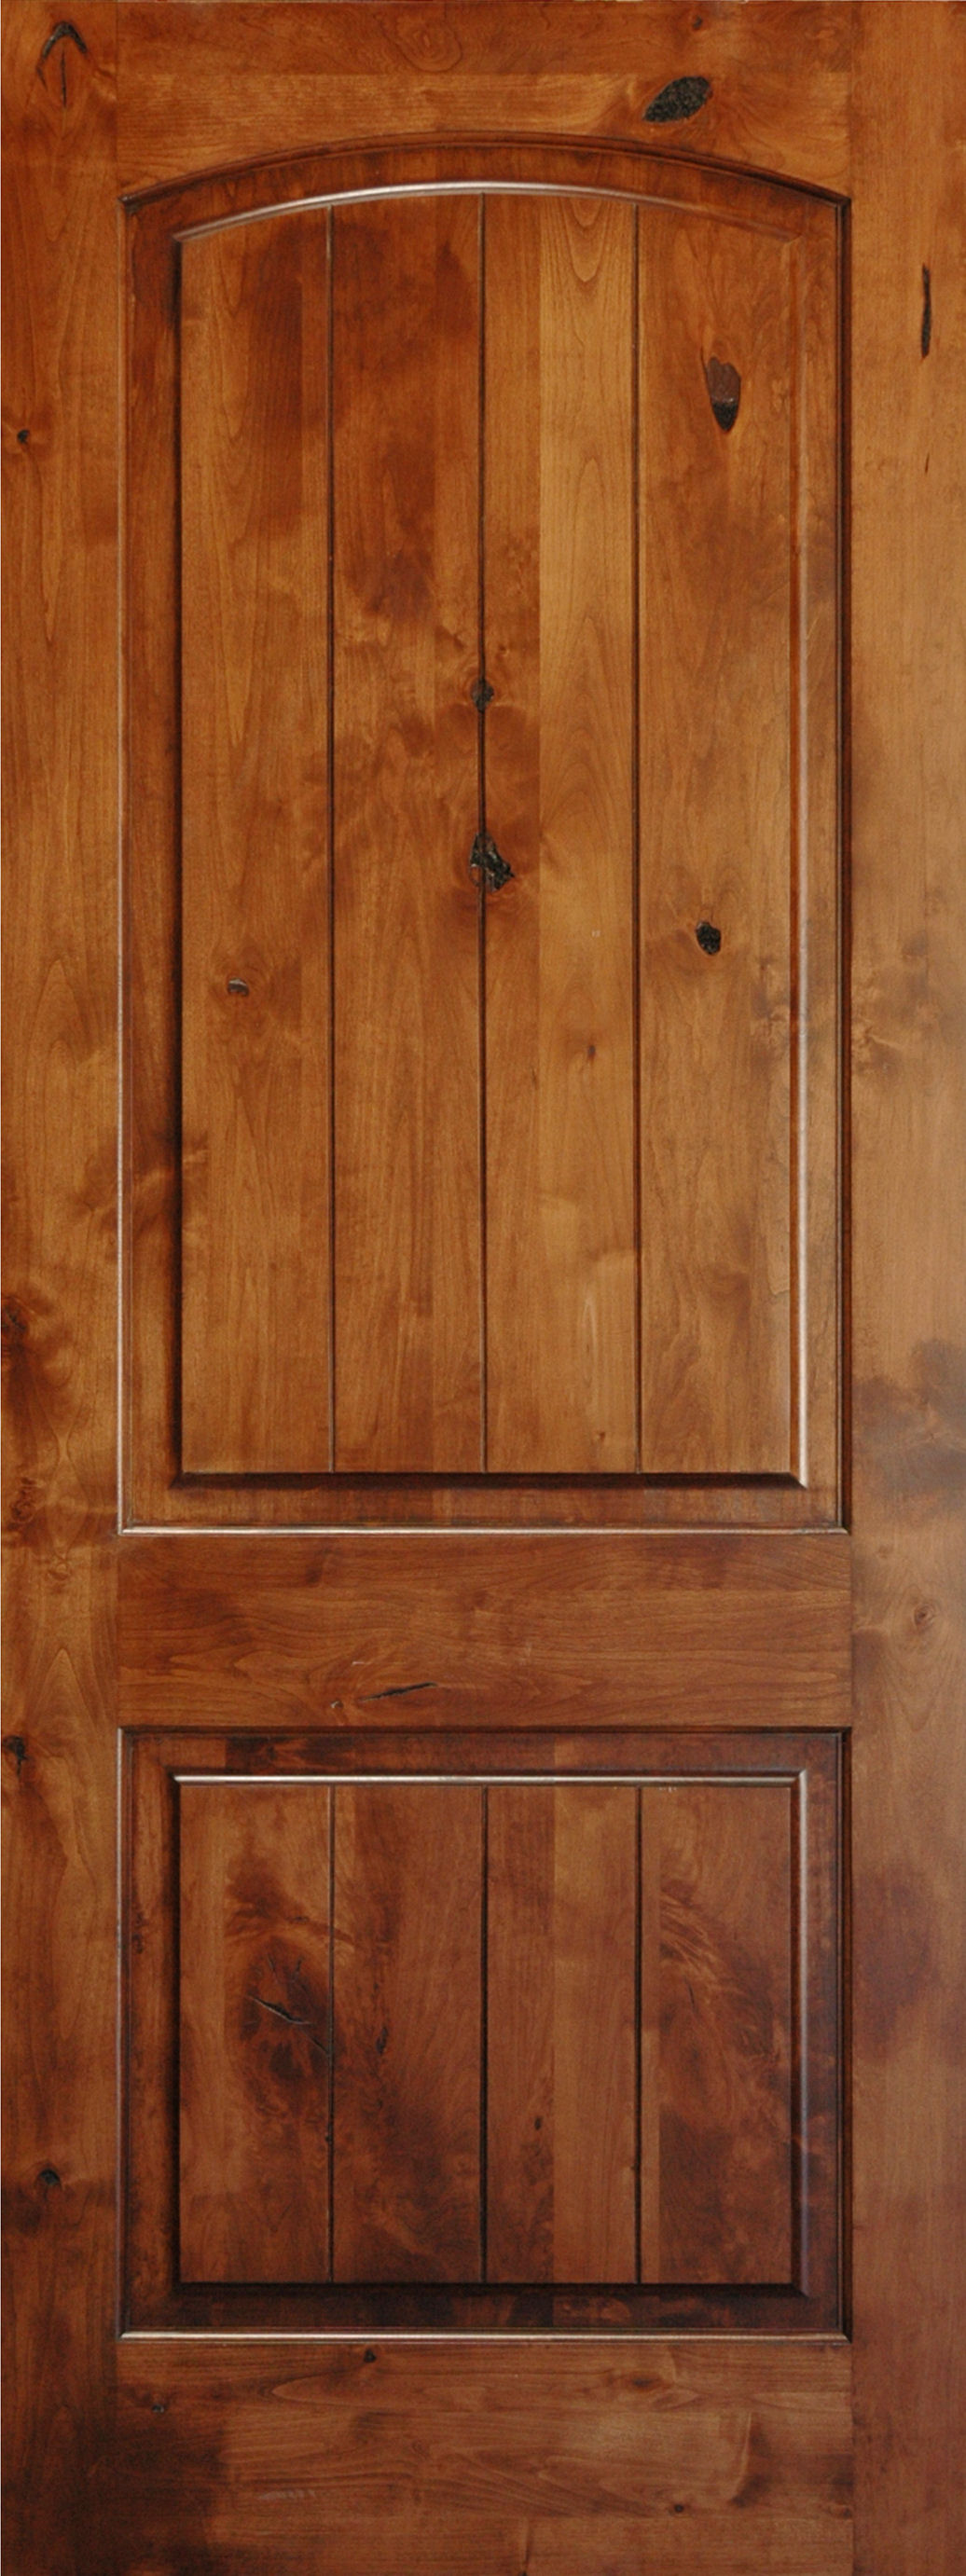 2 Panel Interior Wood Doors